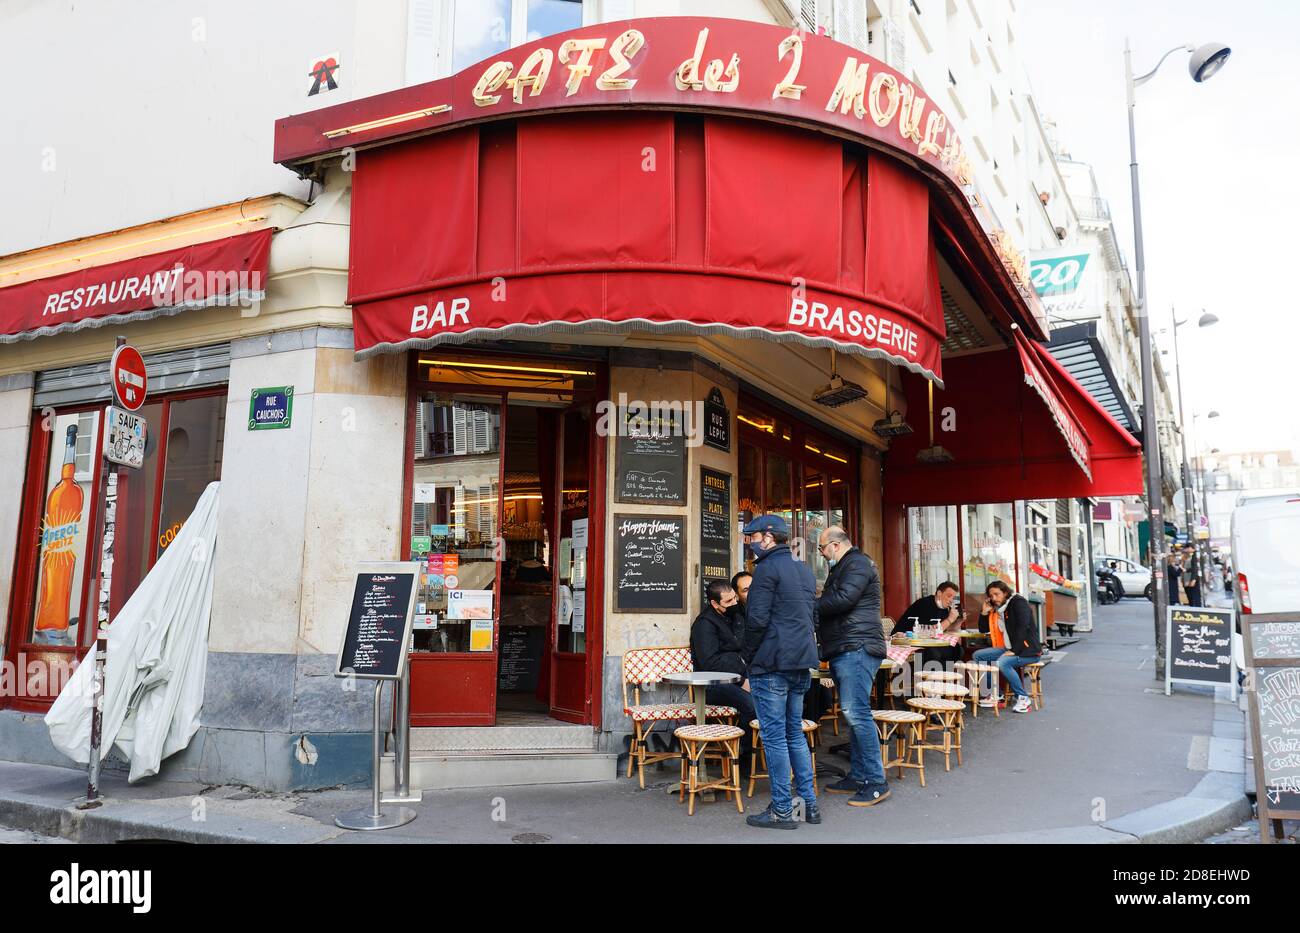 Café des 2 Moulins - Wikipedia